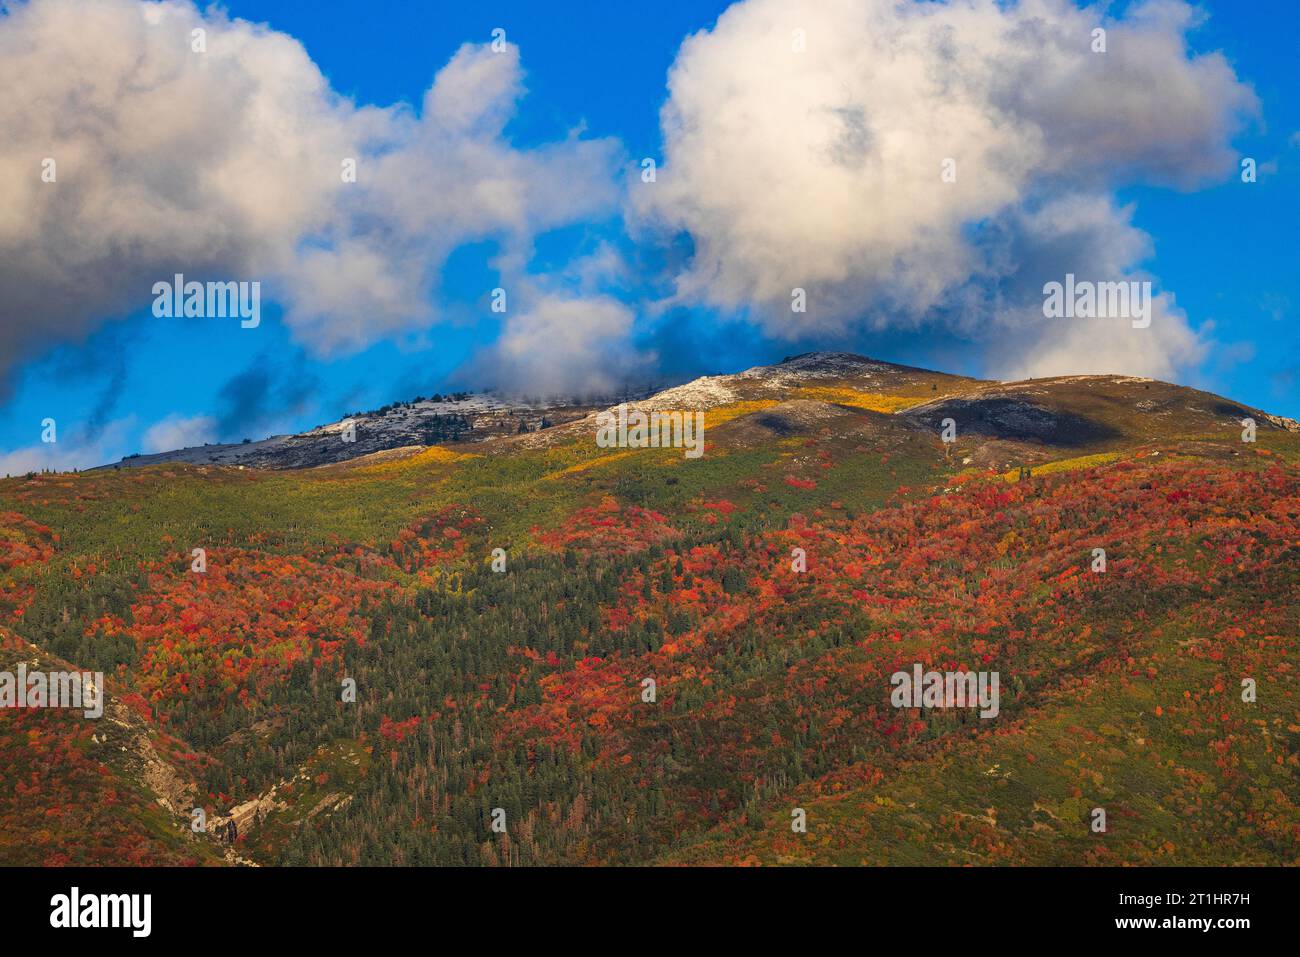 Dies ist ein Blick auf die Wasatch Mountains östlich von Farmington, Utah, mit Herbstfarben: Rot niedriger, gelb höher und eine Staubwolke oben. Stockfoto